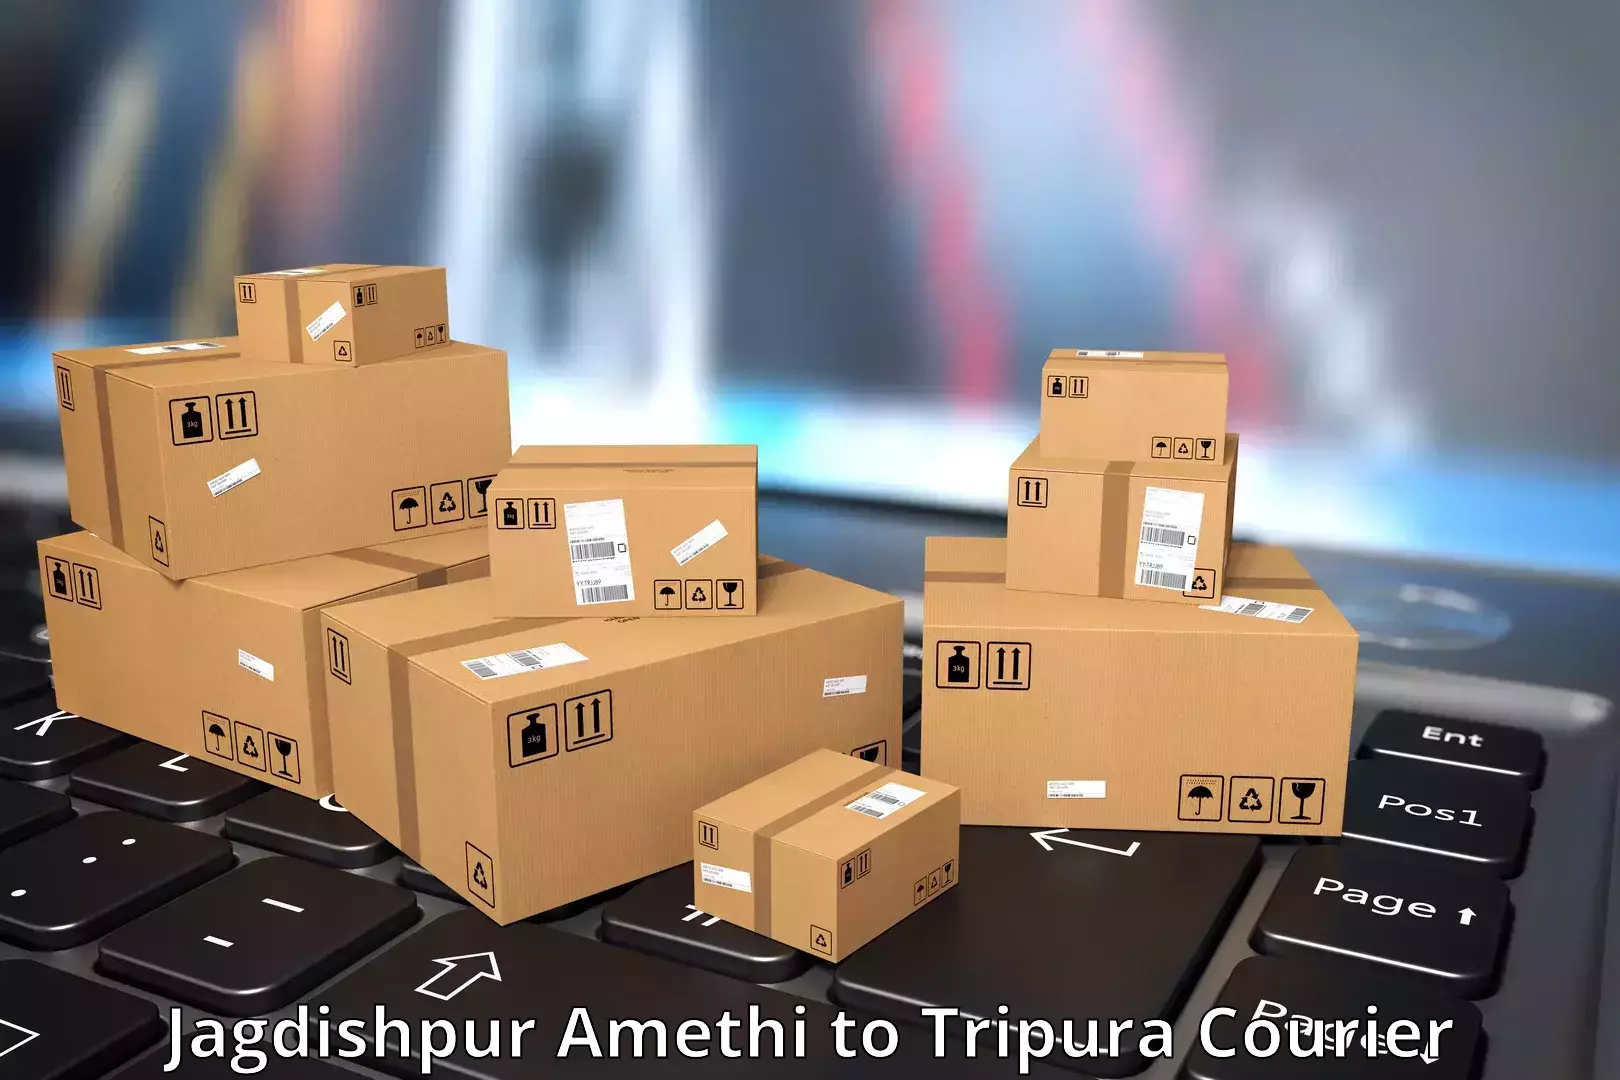 Cash on delivery service Jagdishpur Amethi to Manughat